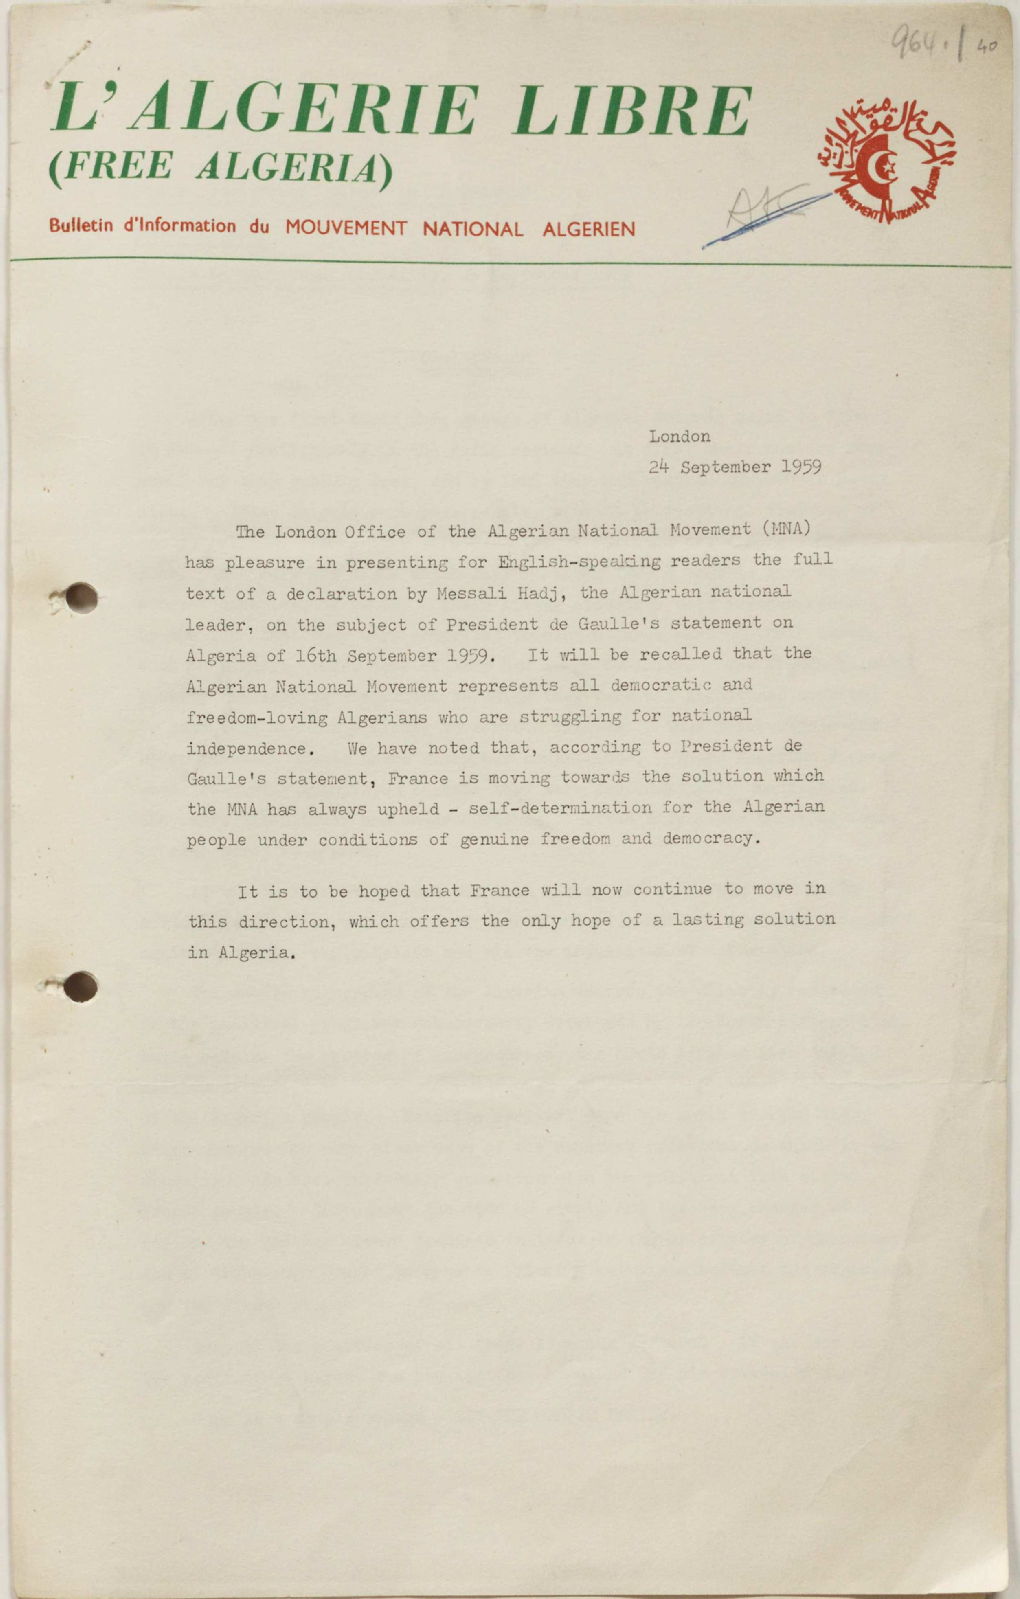 Declaration of Messali Hadj in response to General de Gaulle